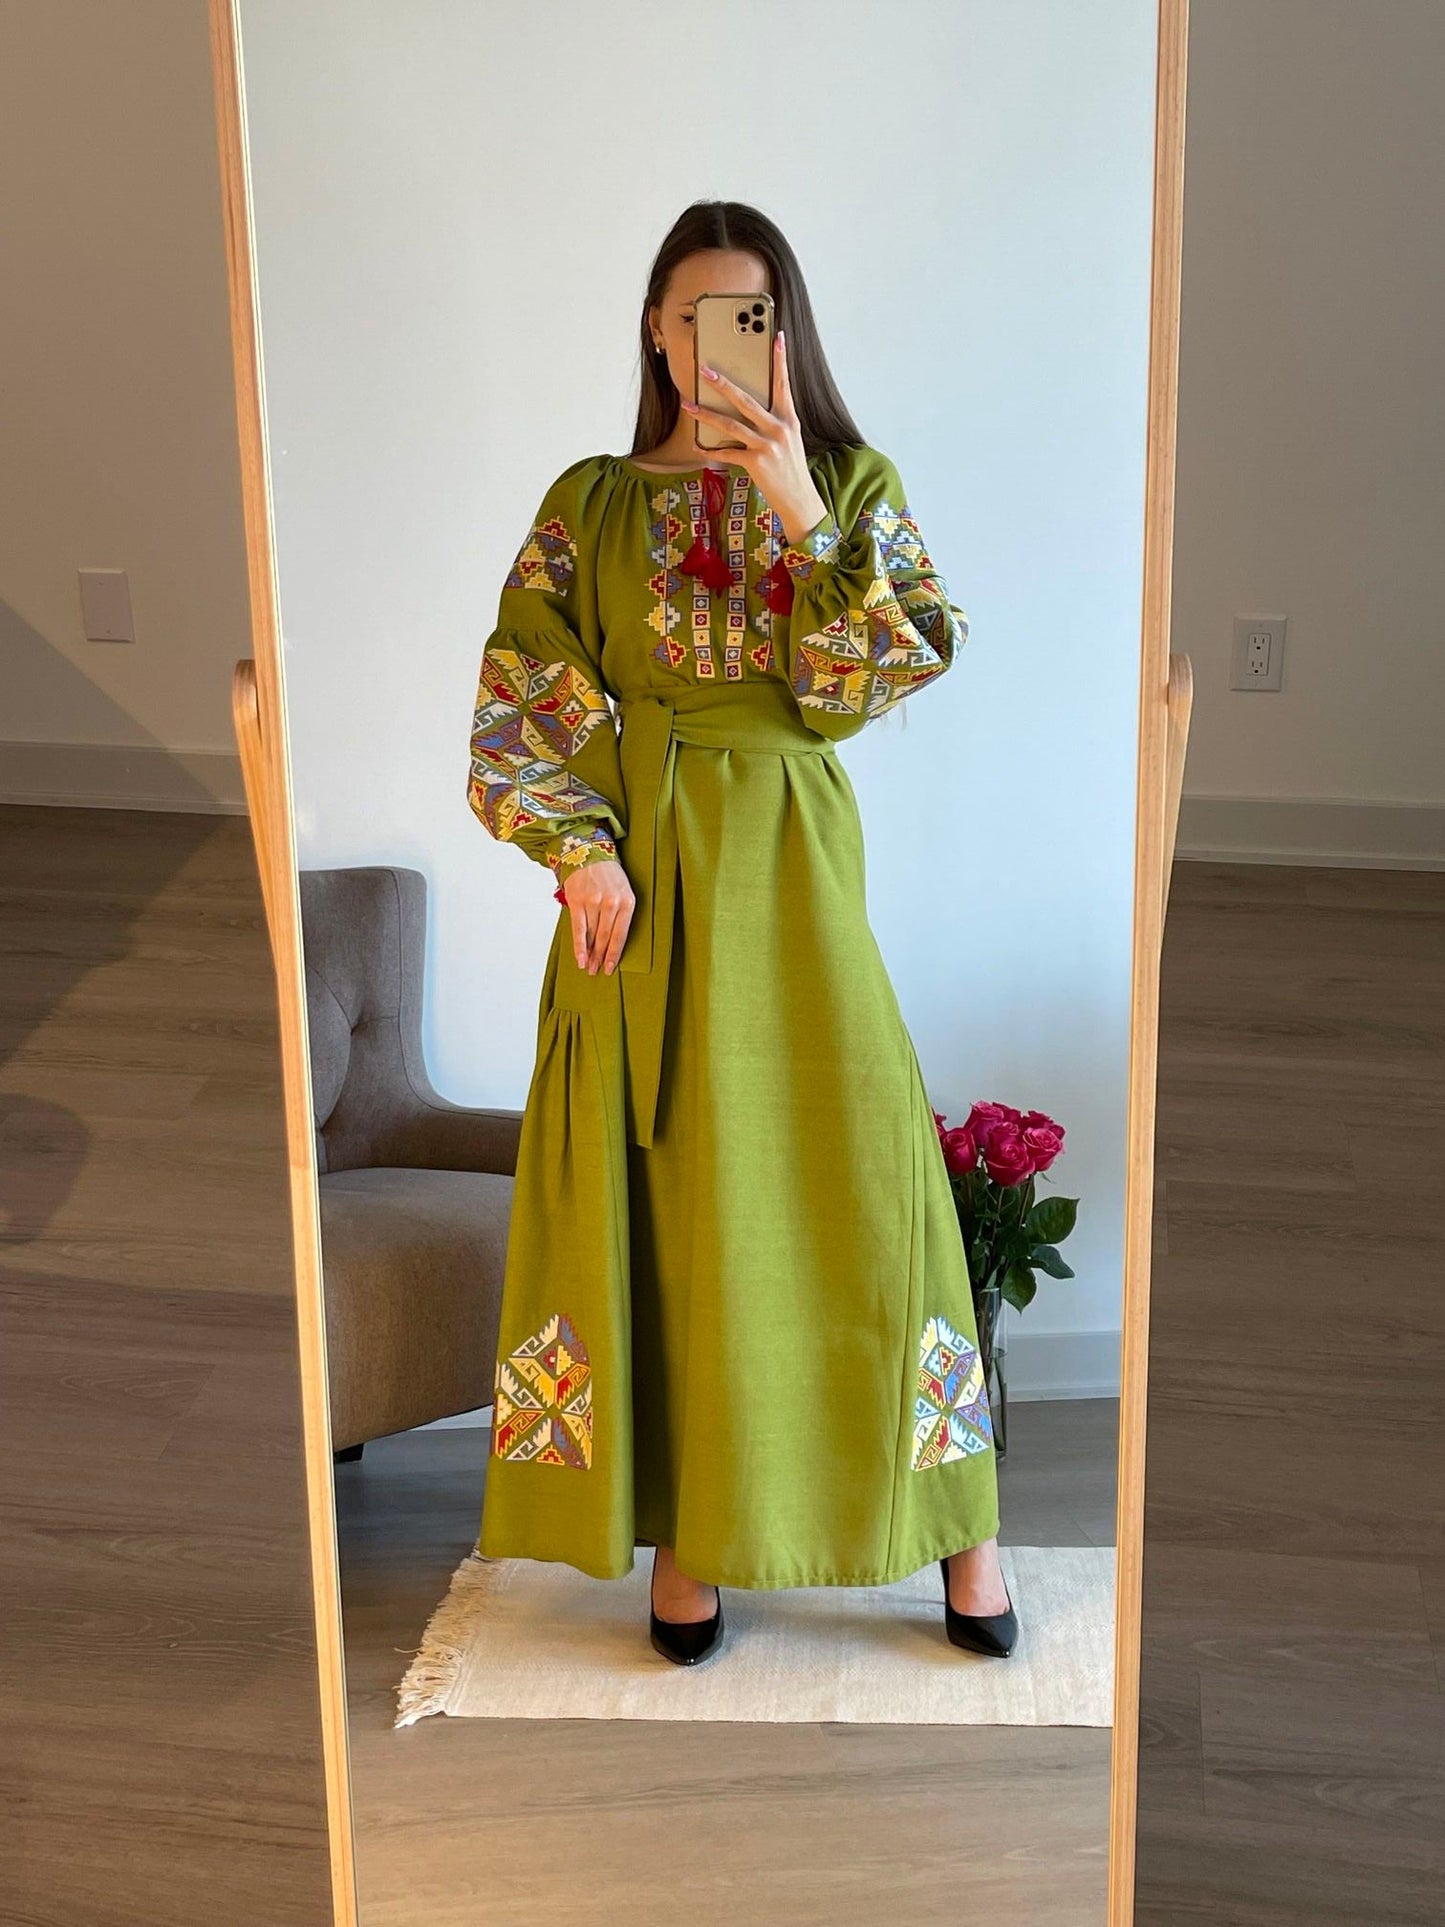 Verdant Harmony: The Whimsical Salad Green Ukrainian Vyshyvanka Dress with Vibrant Embroidery - Vatra